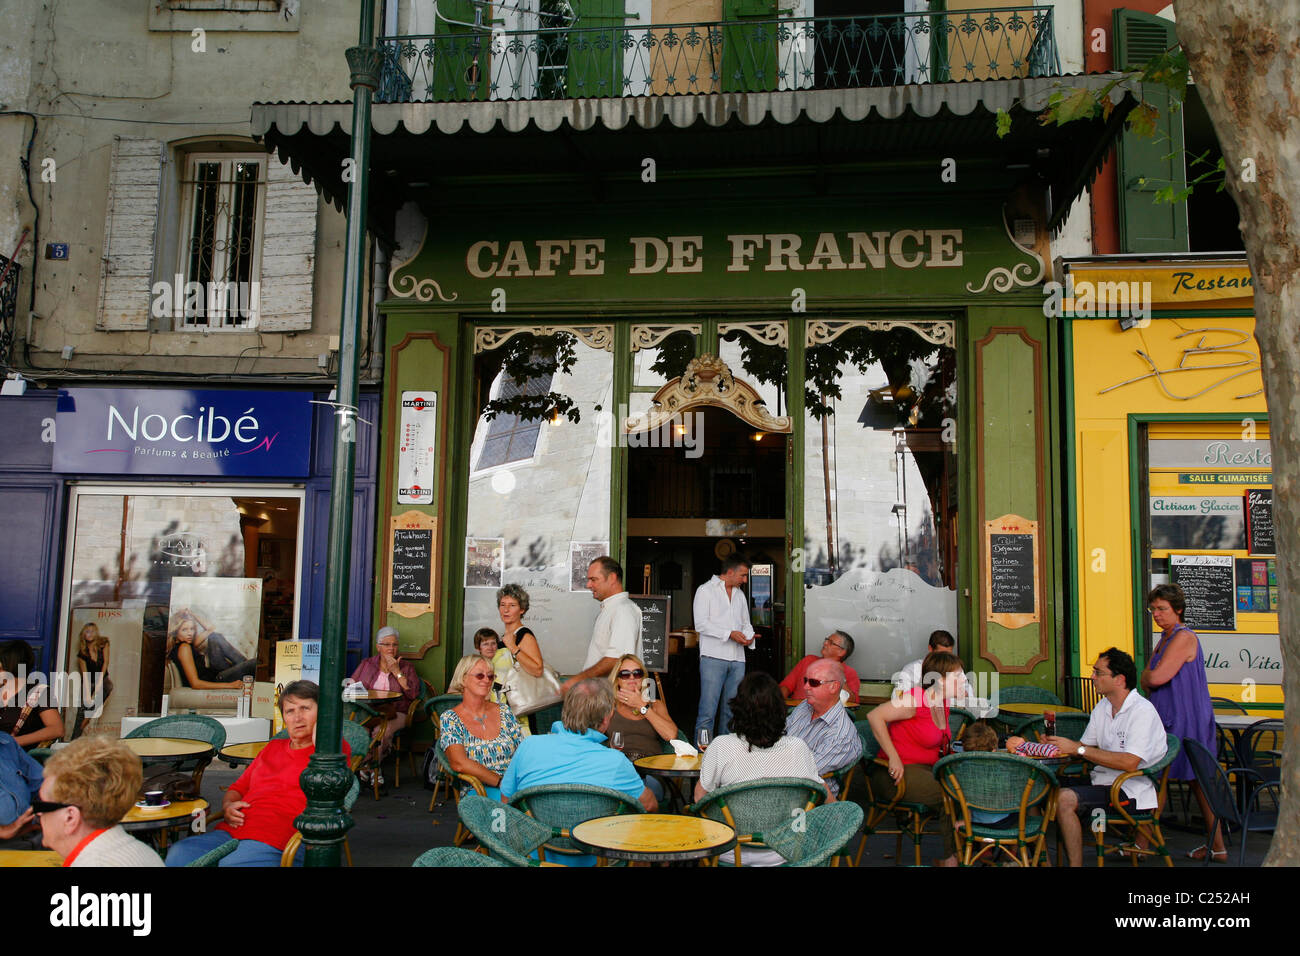 Cafe im Ort De La Liberte, L'Isle Sur la Sorgue, Vaucluse, Provence, Frankreich. Stockfoto